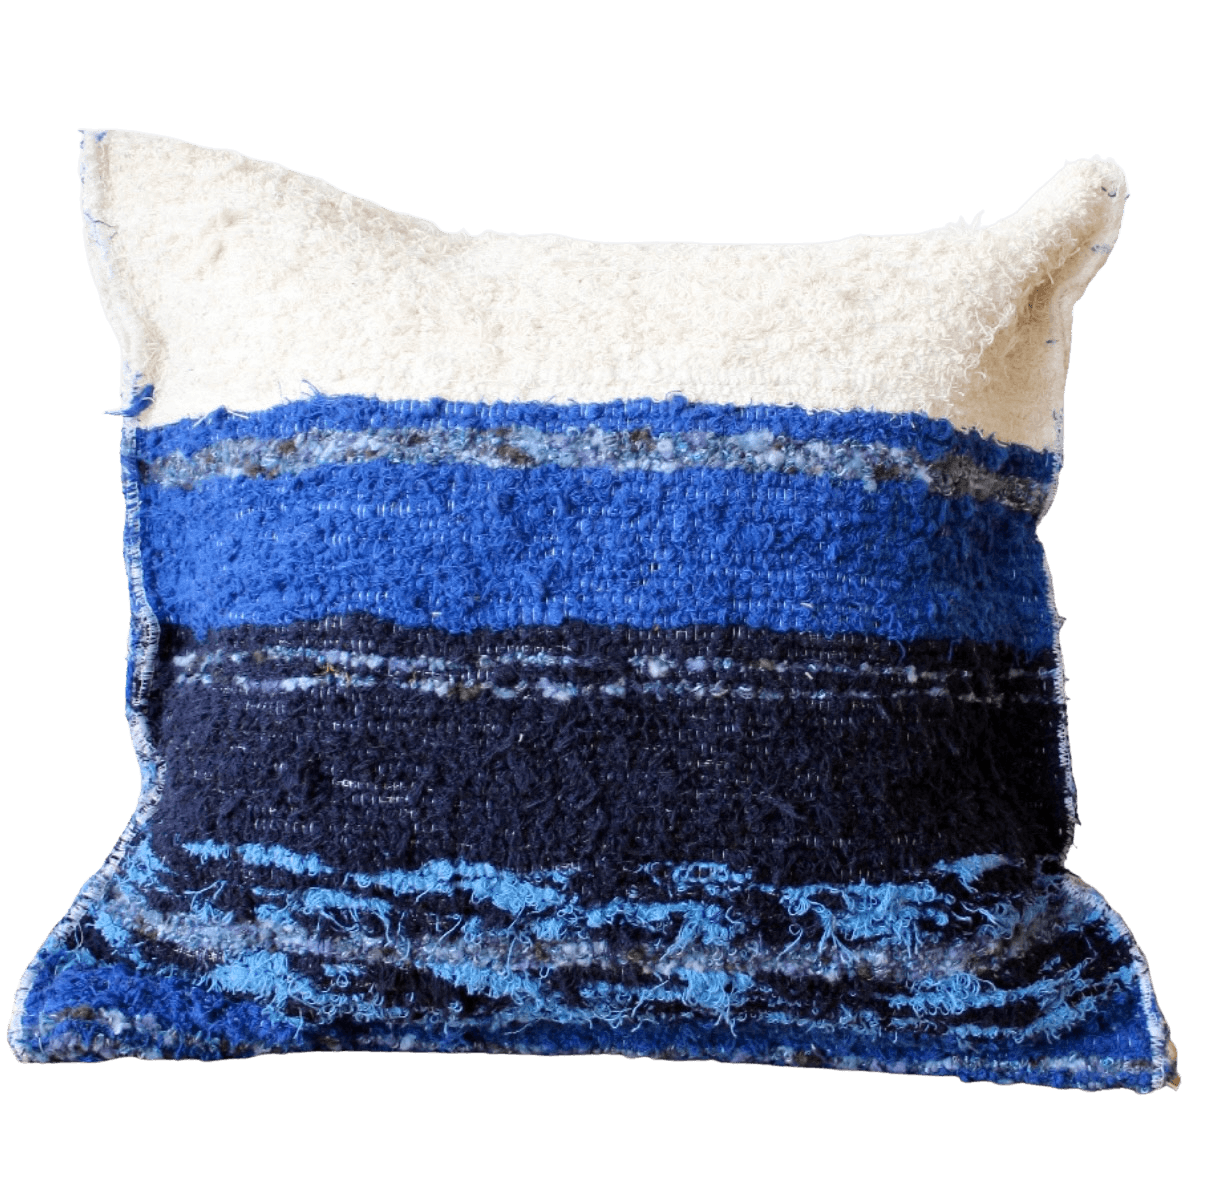 Amour Sud Marbella handgewebtes Kissen Sitzkissen inclusive. Füllung in blau & weiß - 50 x 50 cm - Bitangel RENOVATE & FURNISH HOMES GmbH